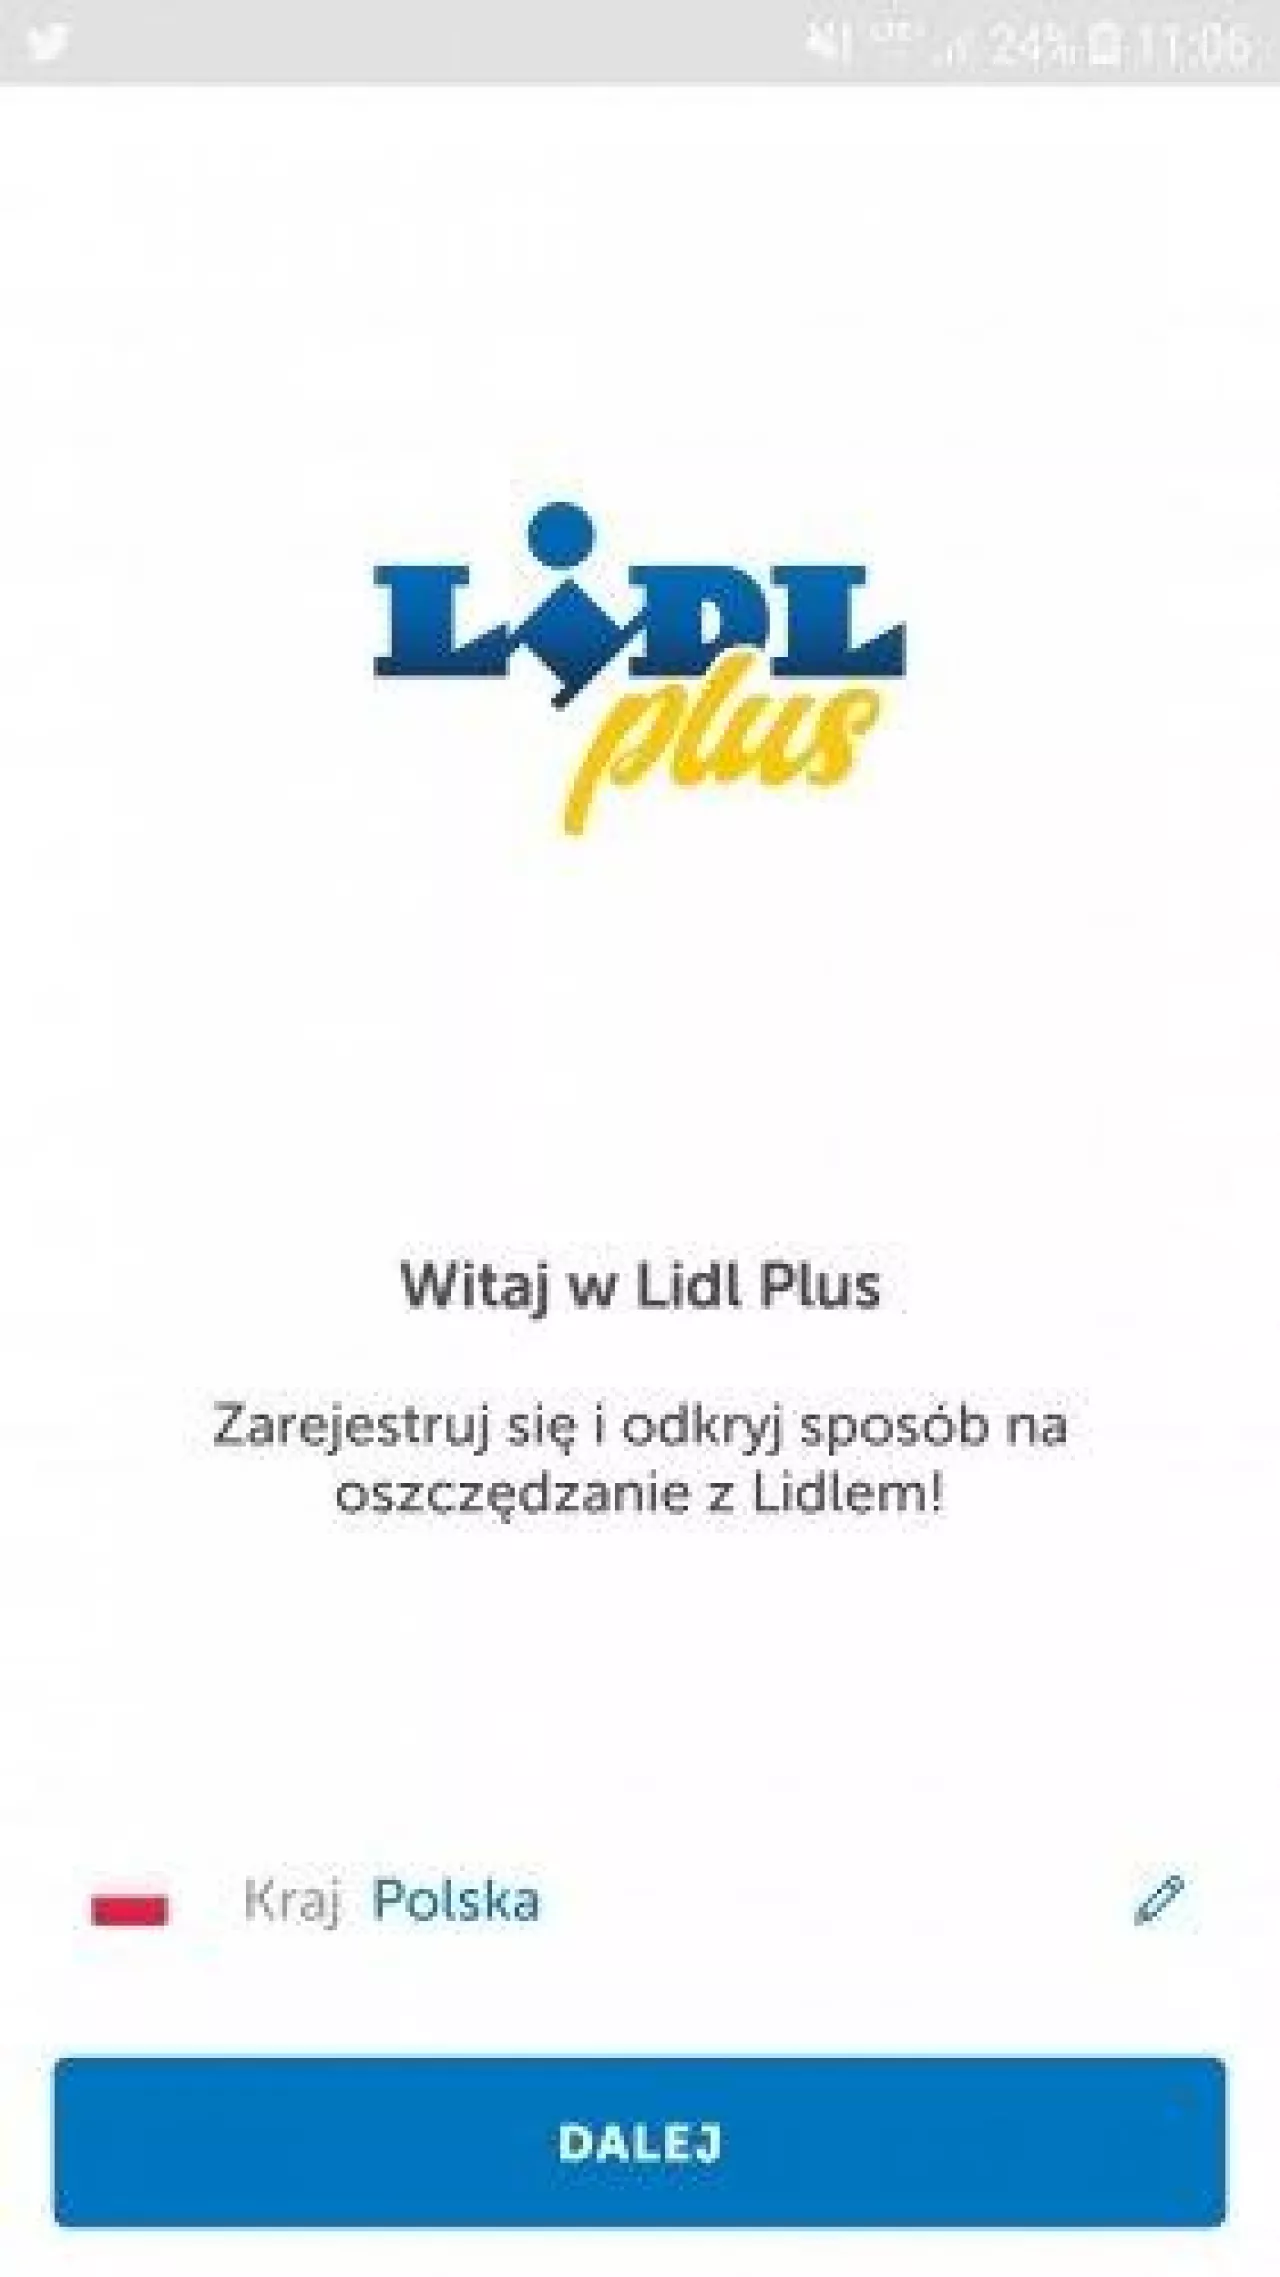 Lidl Plus - tak będzie się nazywał program lojalnościowy sieci Lidl (fot. wiadomoscihandlowe.pl)